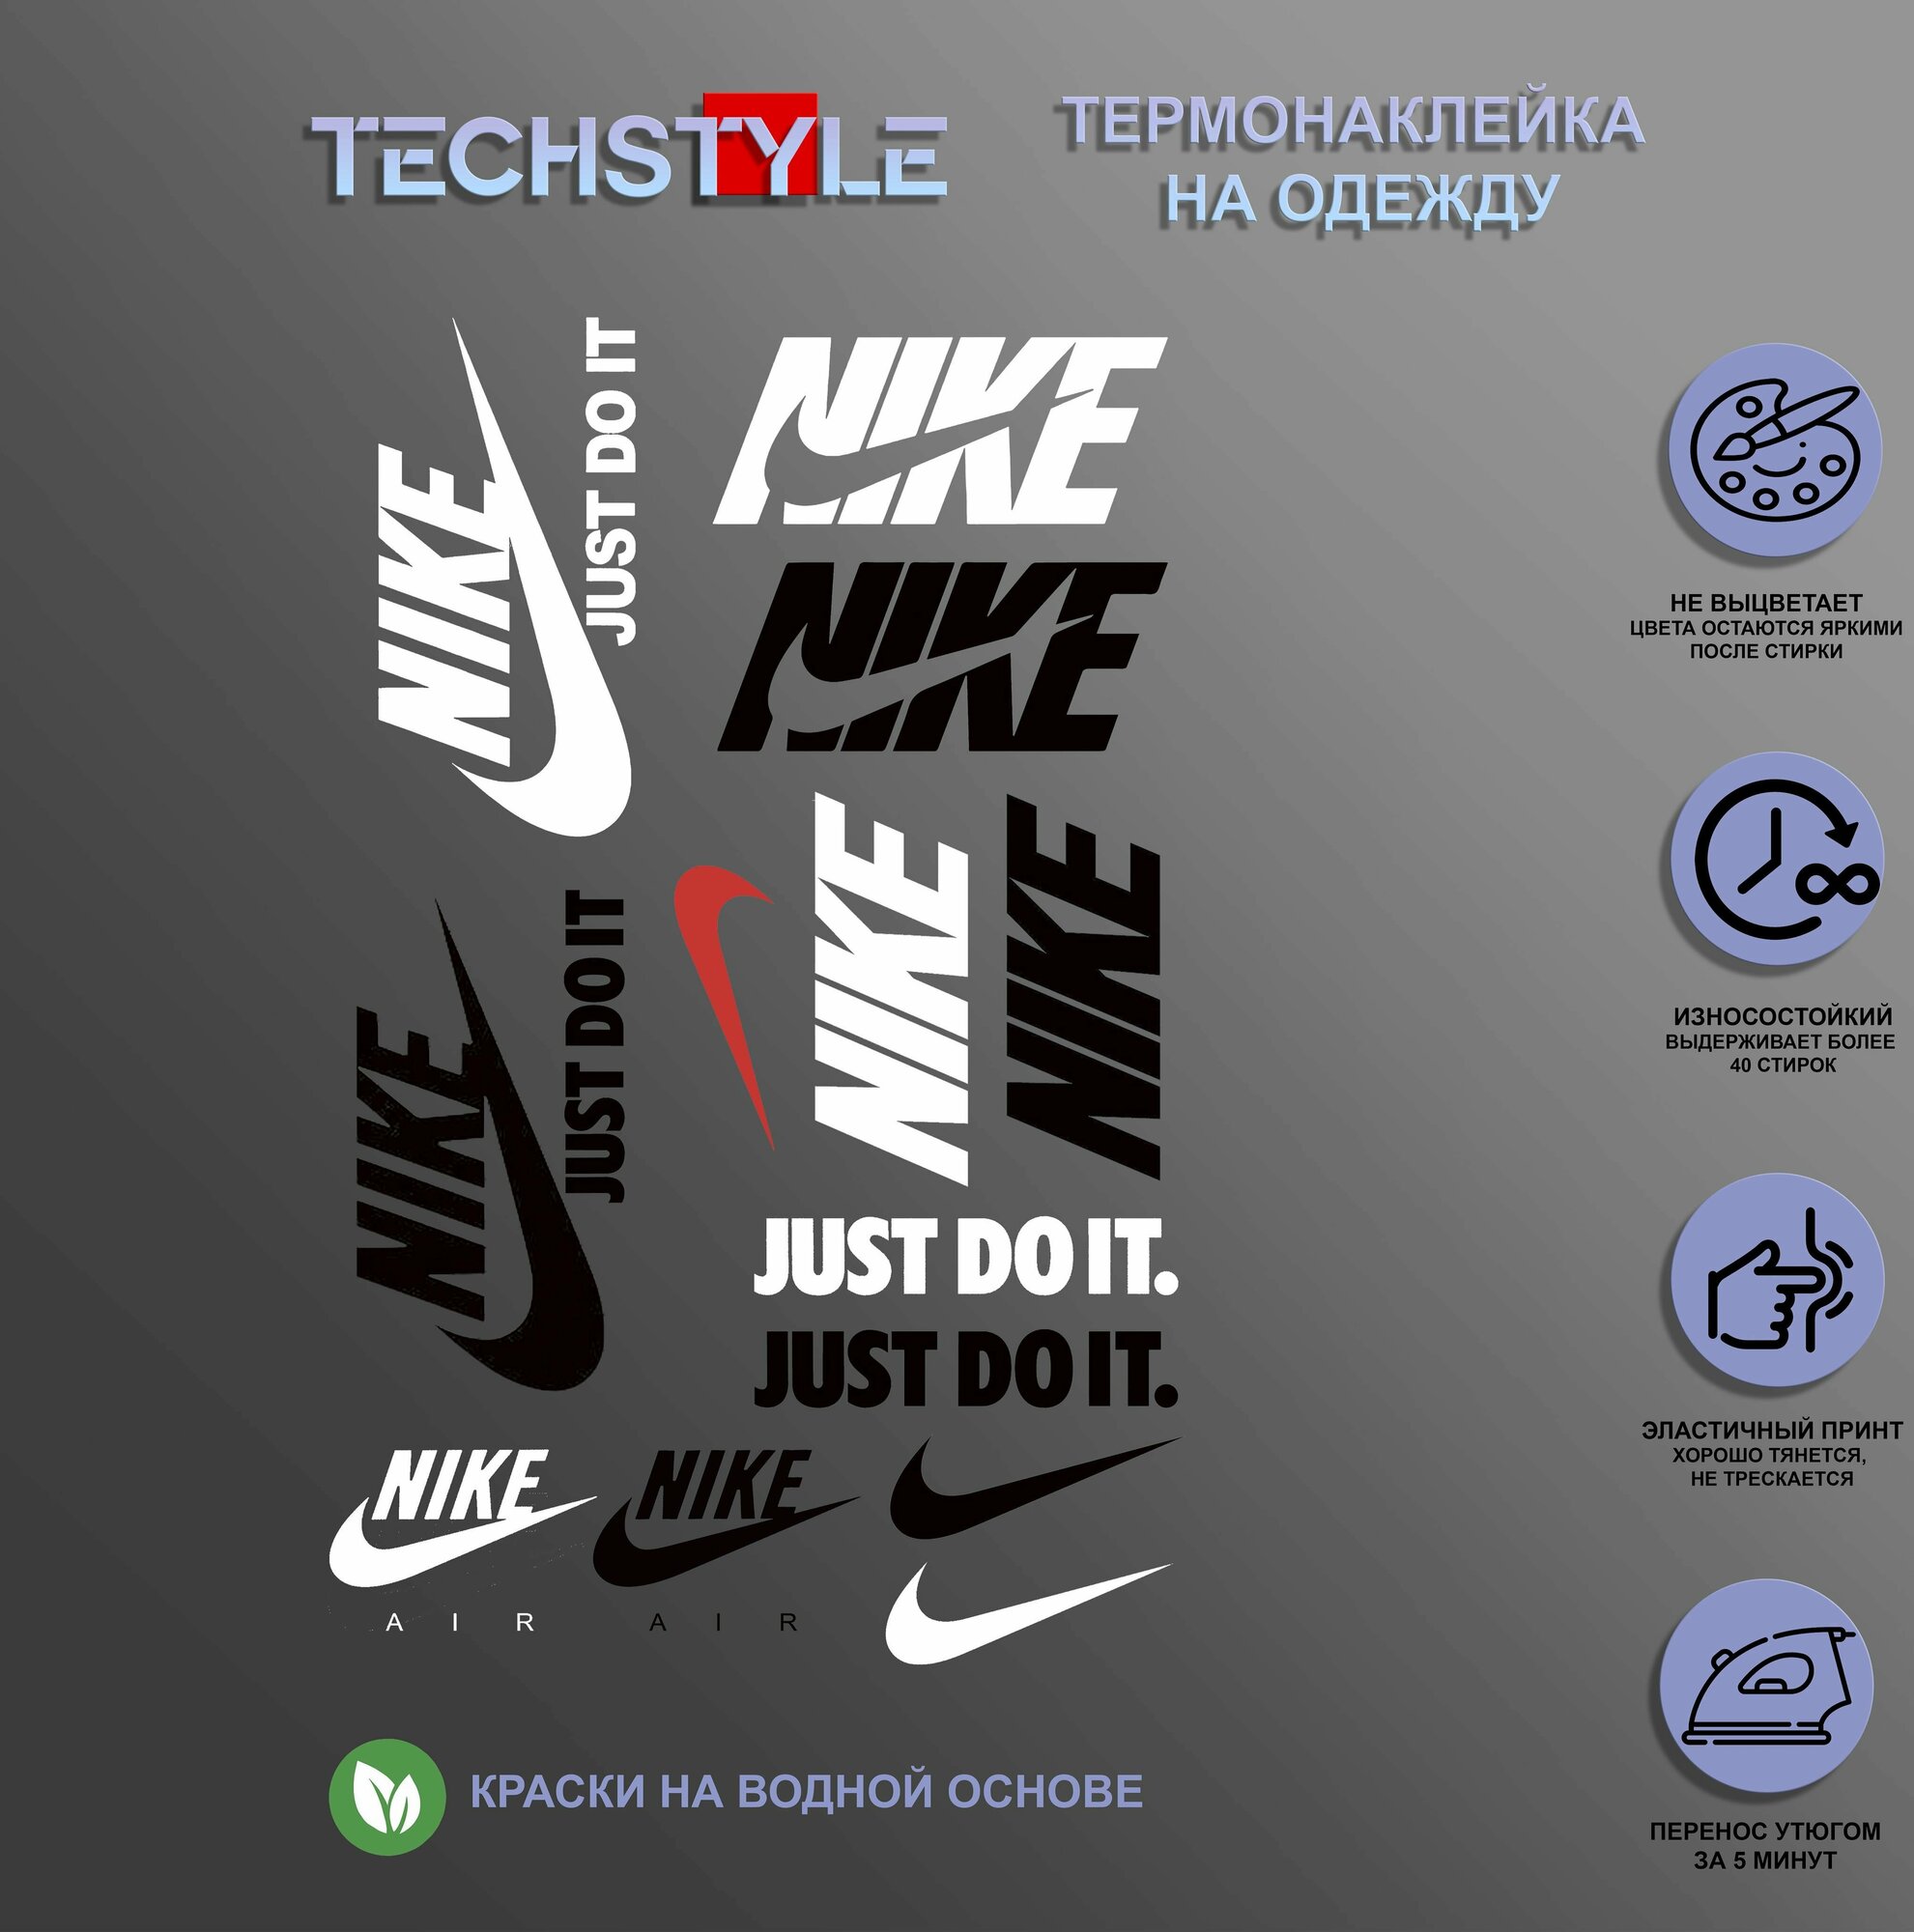 Термонаклейка на одежду/Термопринт TechStyle/DTF наклейка для одежды Найк Nike